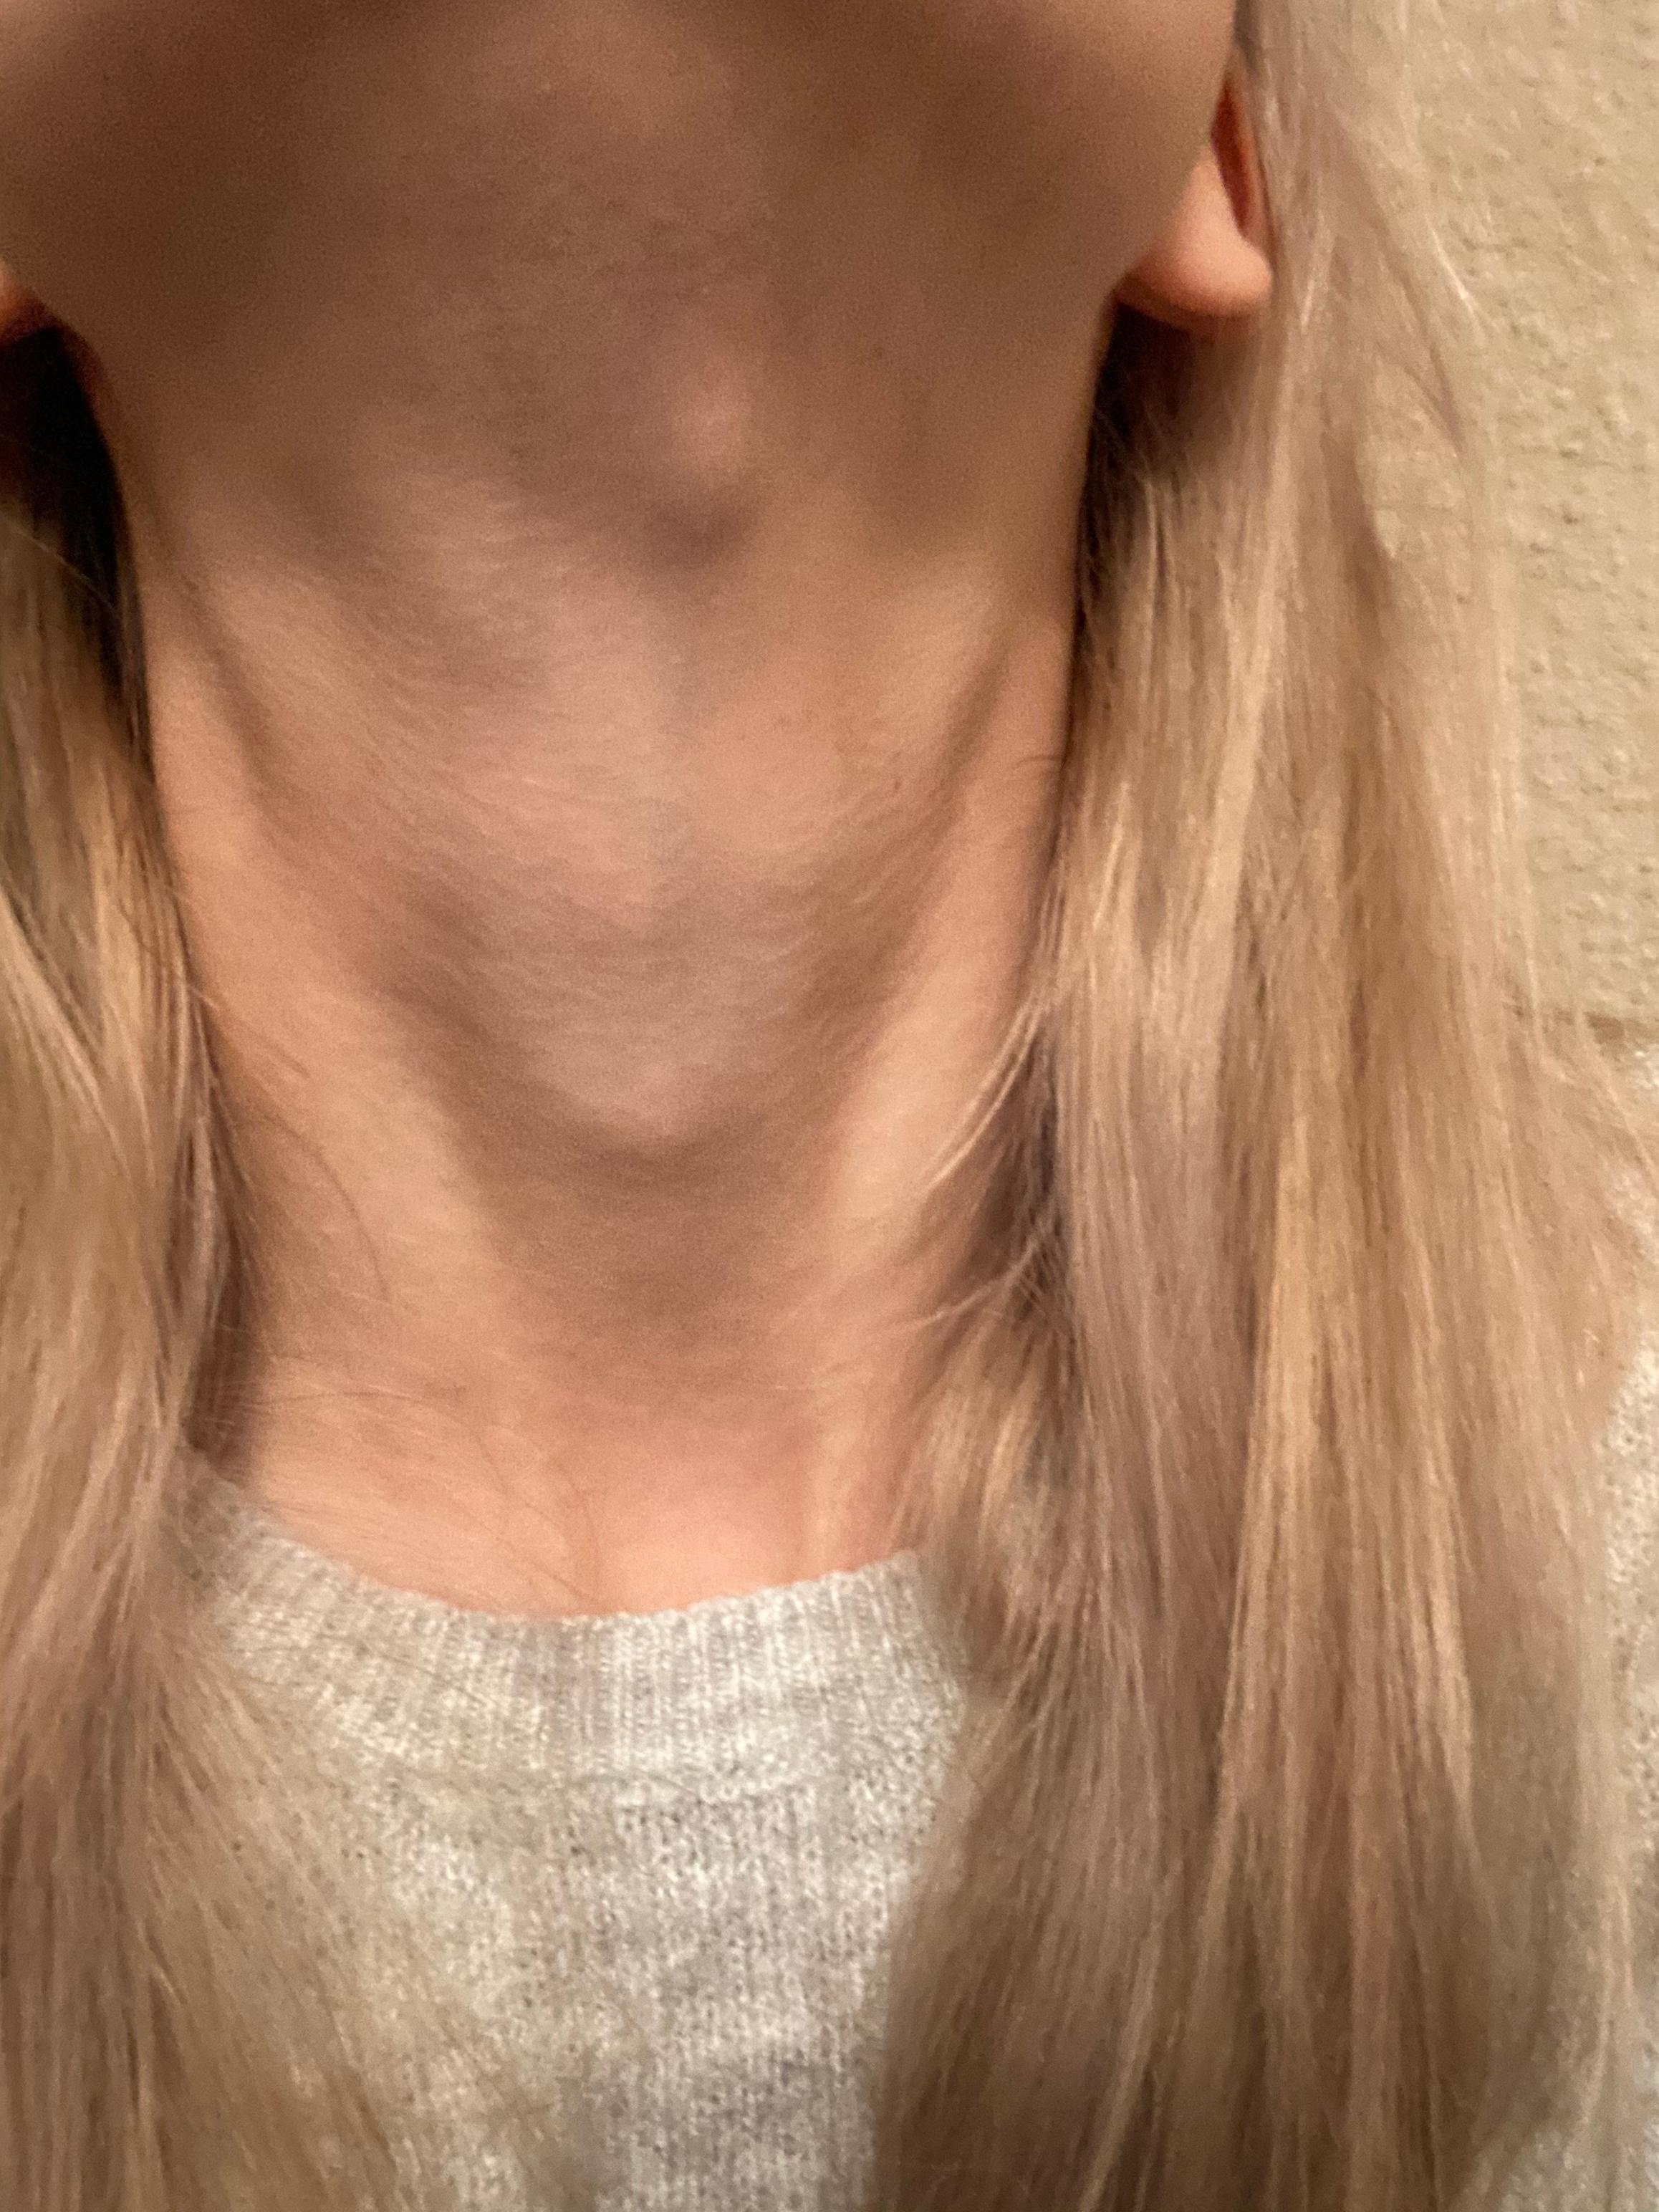 50++ Kropf am hals bilder , Beule am Hals , ist es nur eine Anschwellung des Lymphknotens? (Haut)